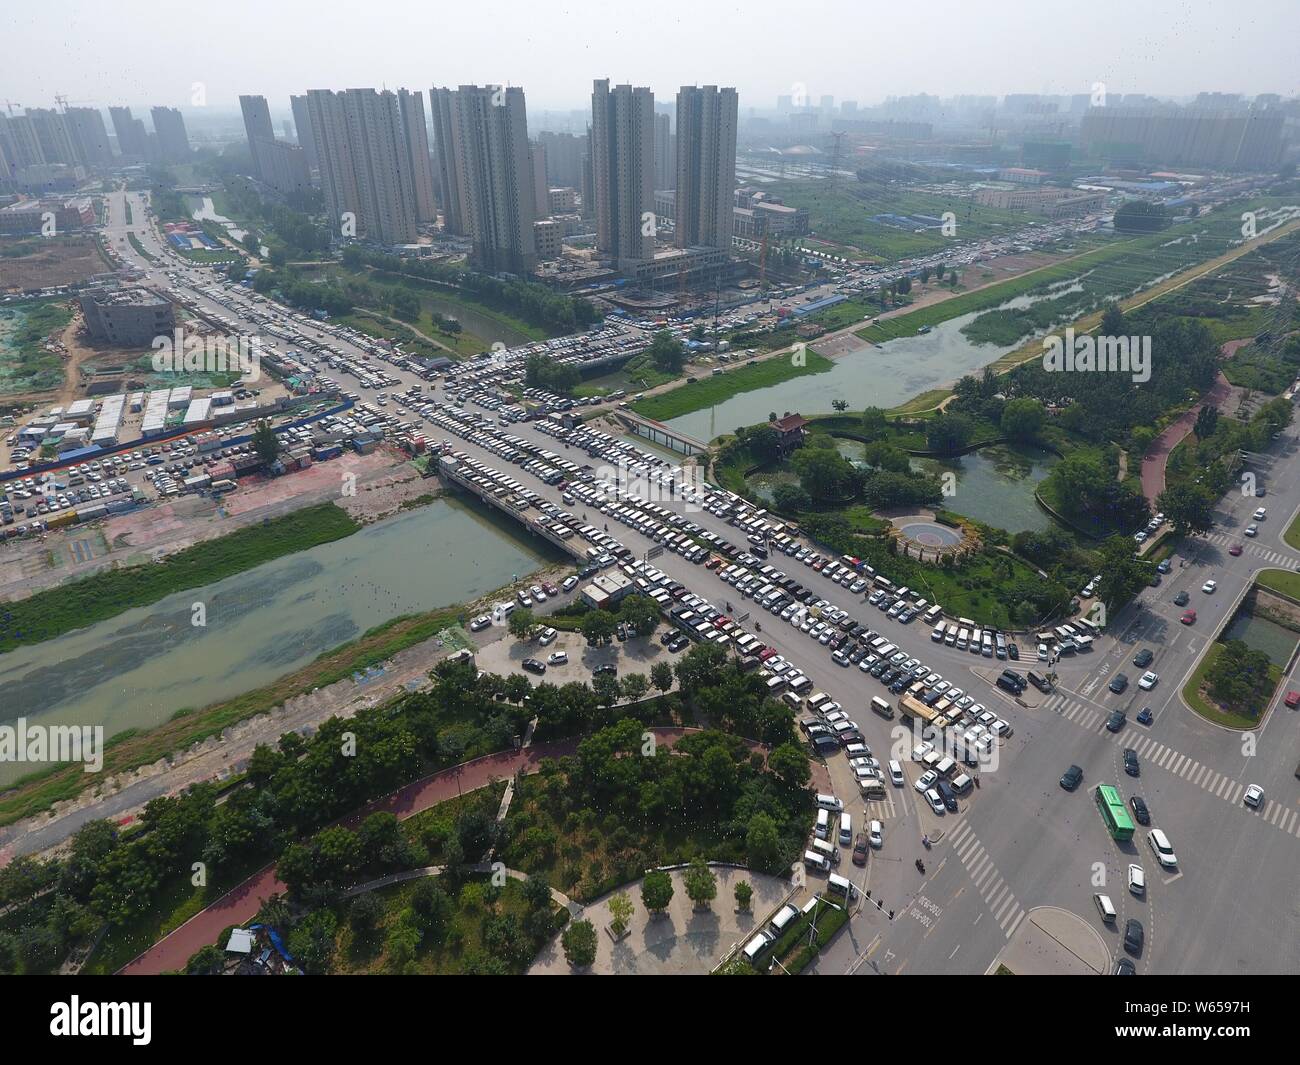 Dans cette vue aérienne, des centaines de voitures usagées sont alignés sur les routes, ce qui influe sur la circulation, dans la ville de Zhengzhou, Henan en Chine centrale Banque D'Images